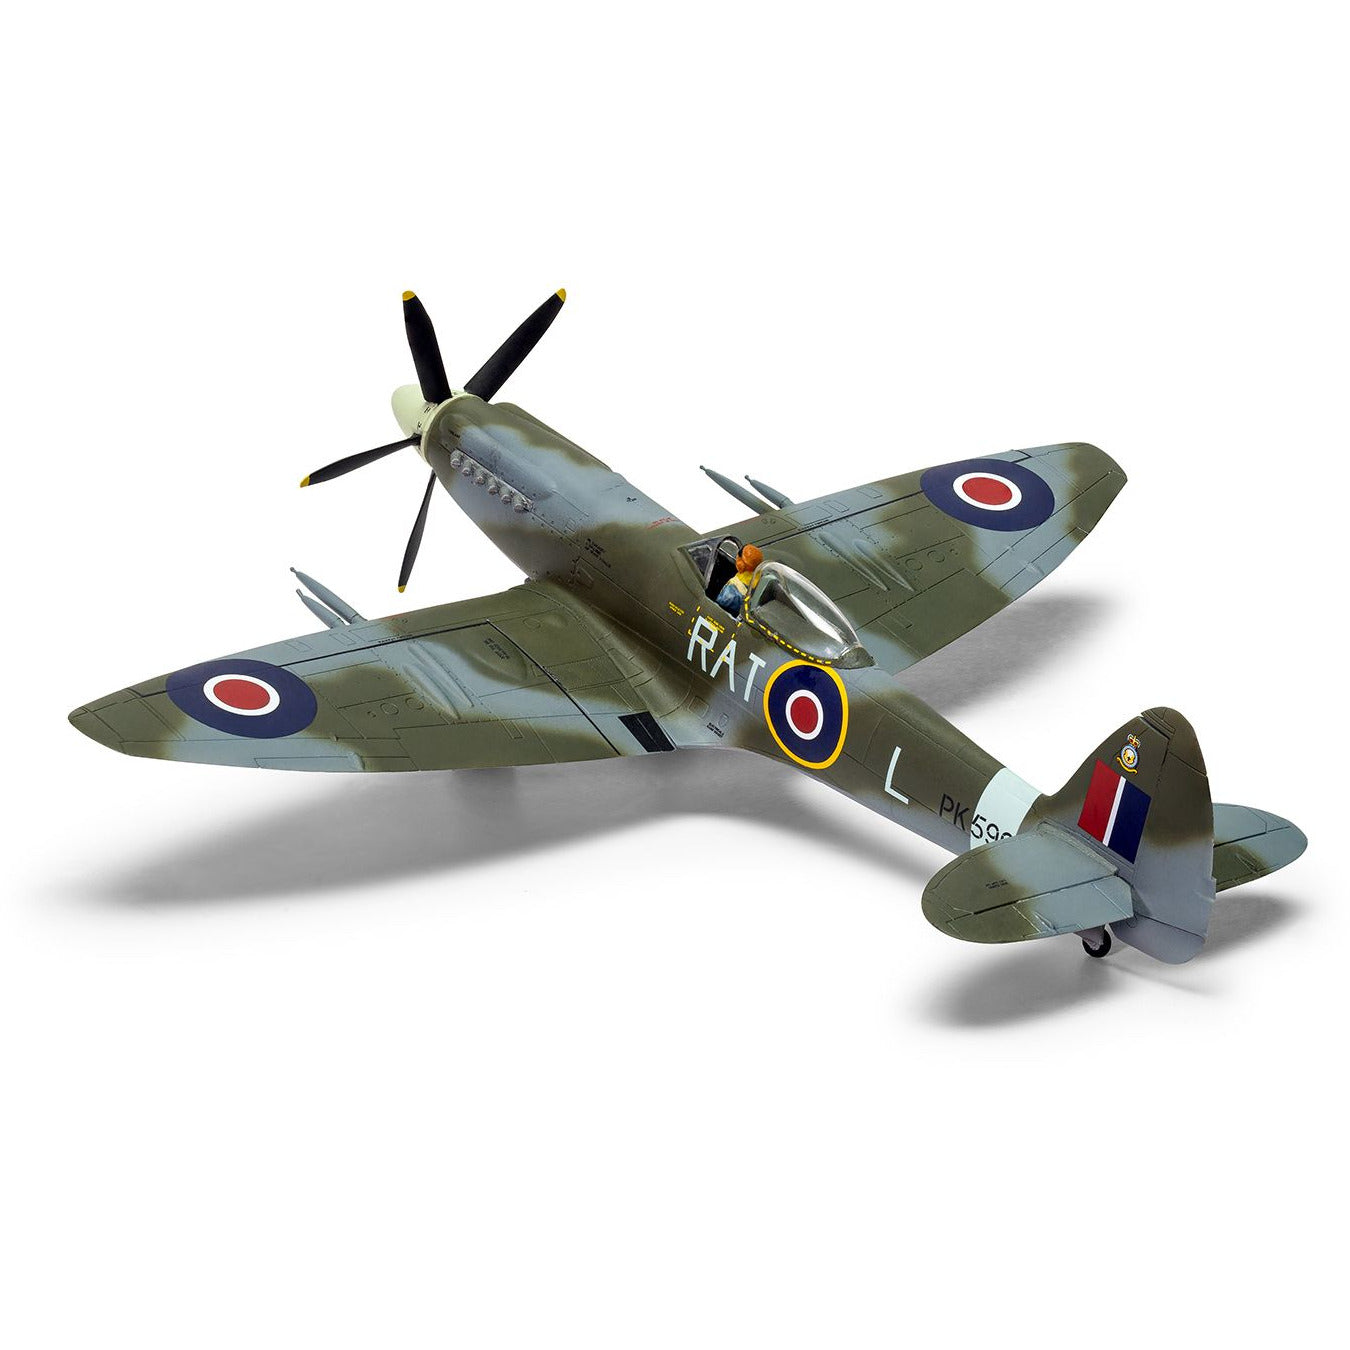 AIRFIX 1/72 Supermarine Spitfire F.22